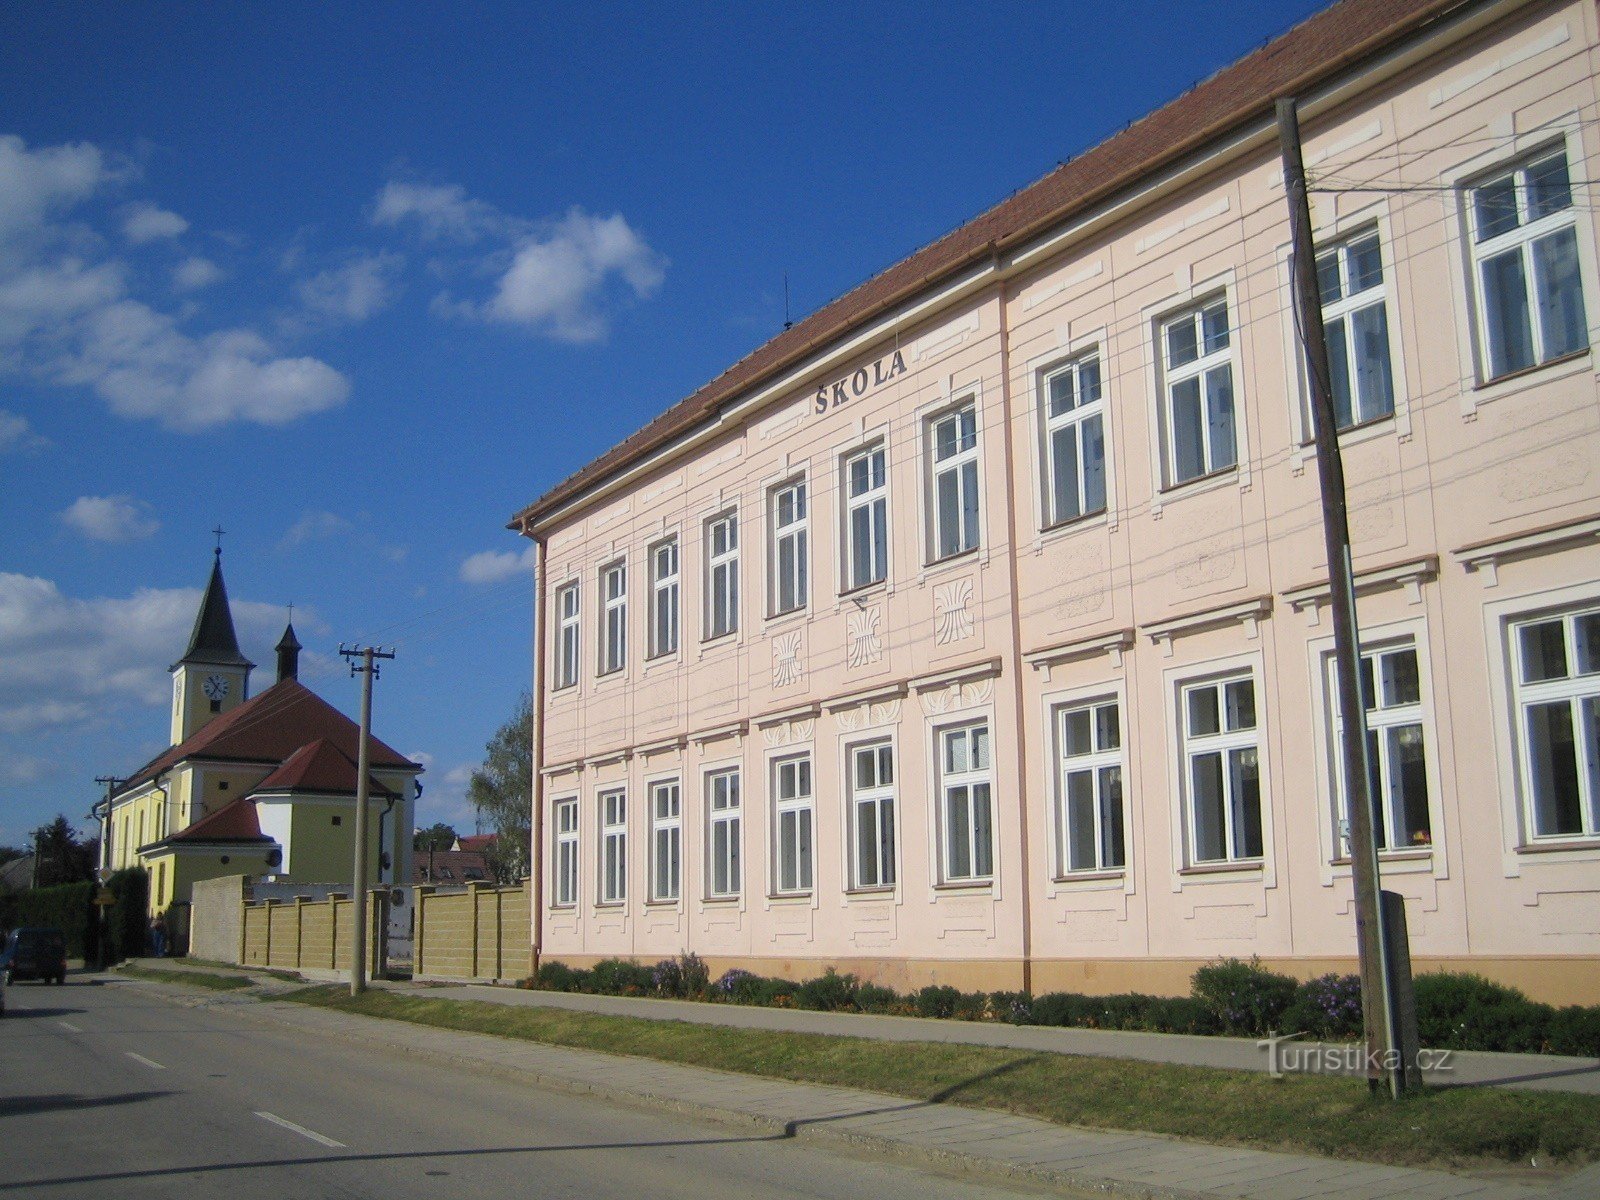 Topolná - škola i crkva